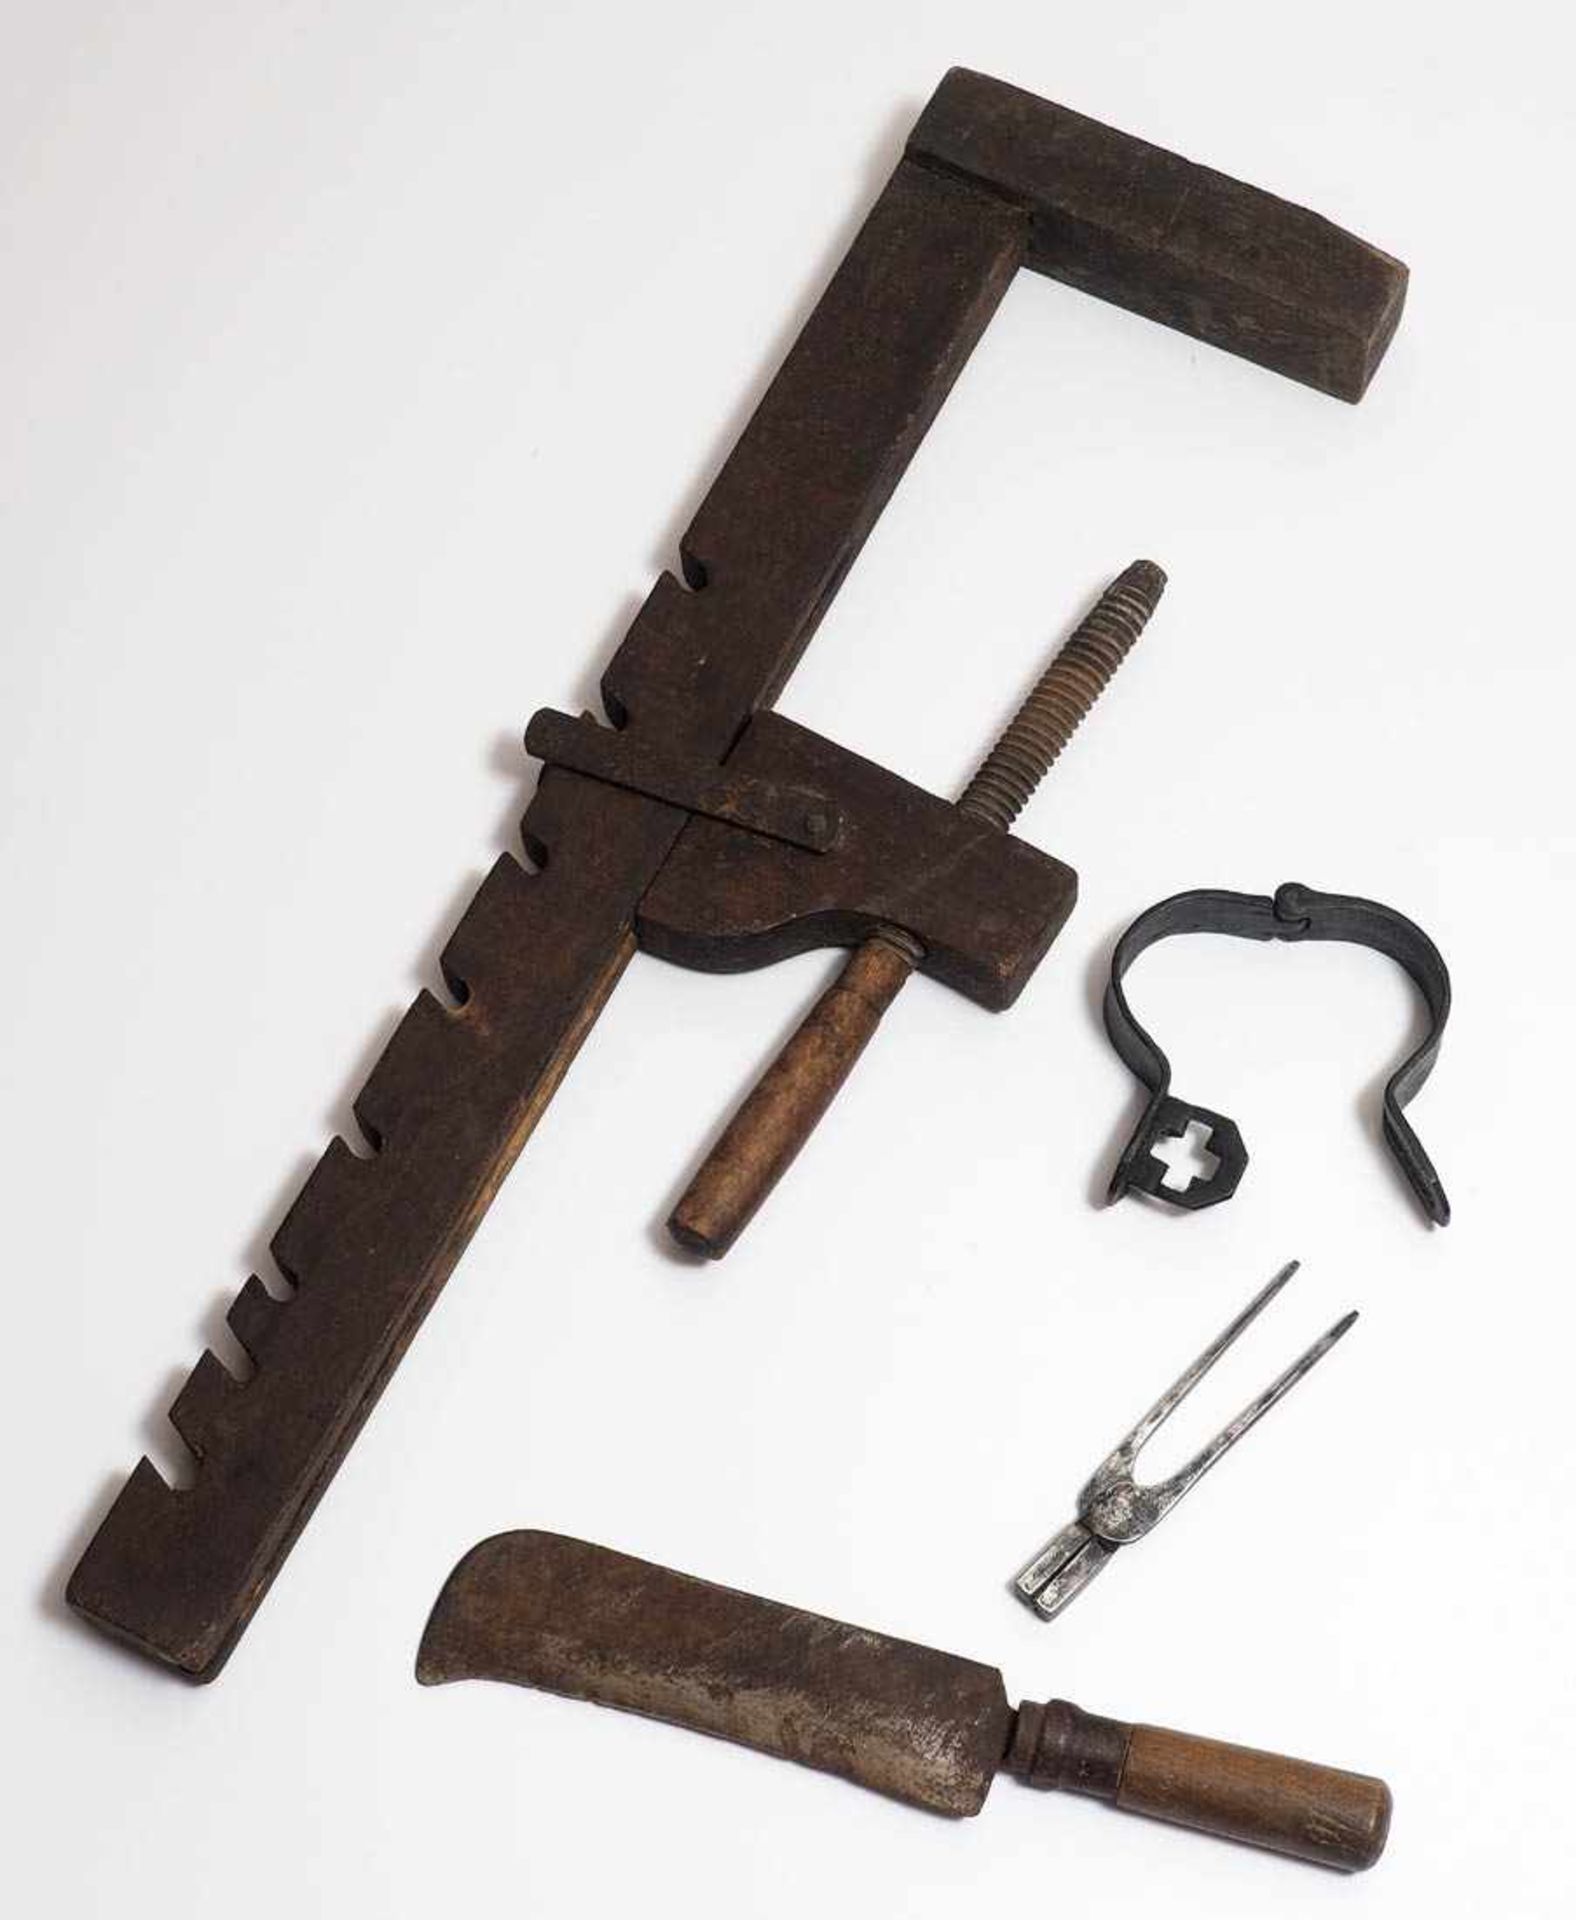 Konvolut Werkzeuge, 19.Jhdt. Höhenverstellbare Schraubzwinge aus Holz, Haumesser, Drahtziehzange